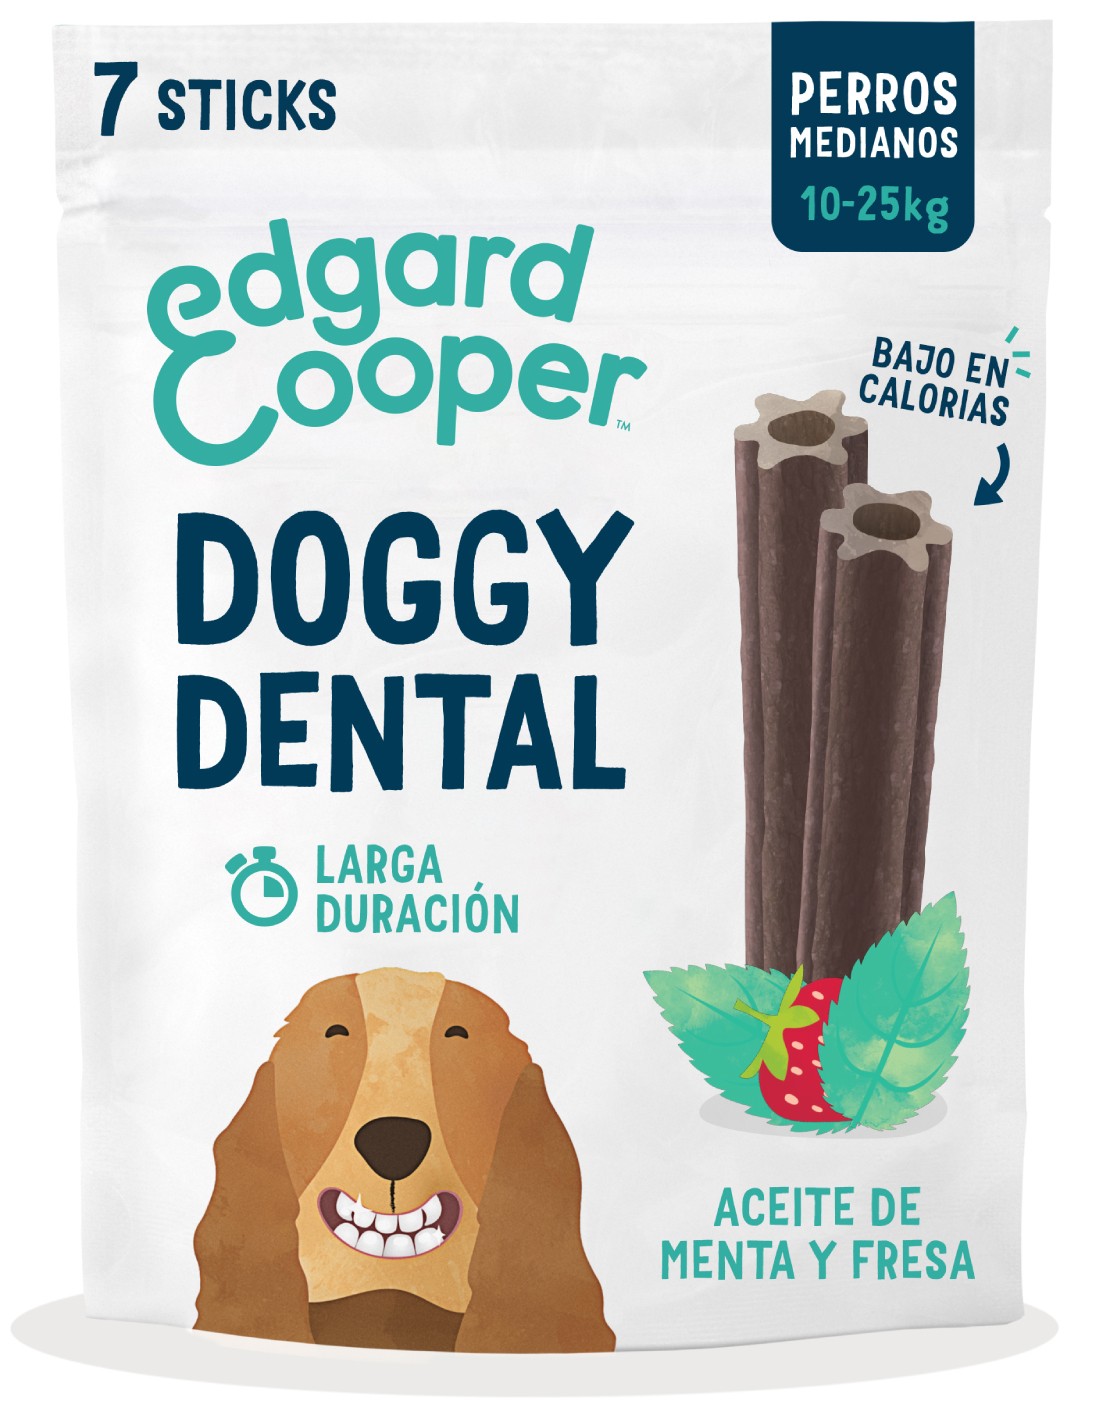 EDGARD & COOPER Fresa y Menta - Snack Dental Perro M (175g)